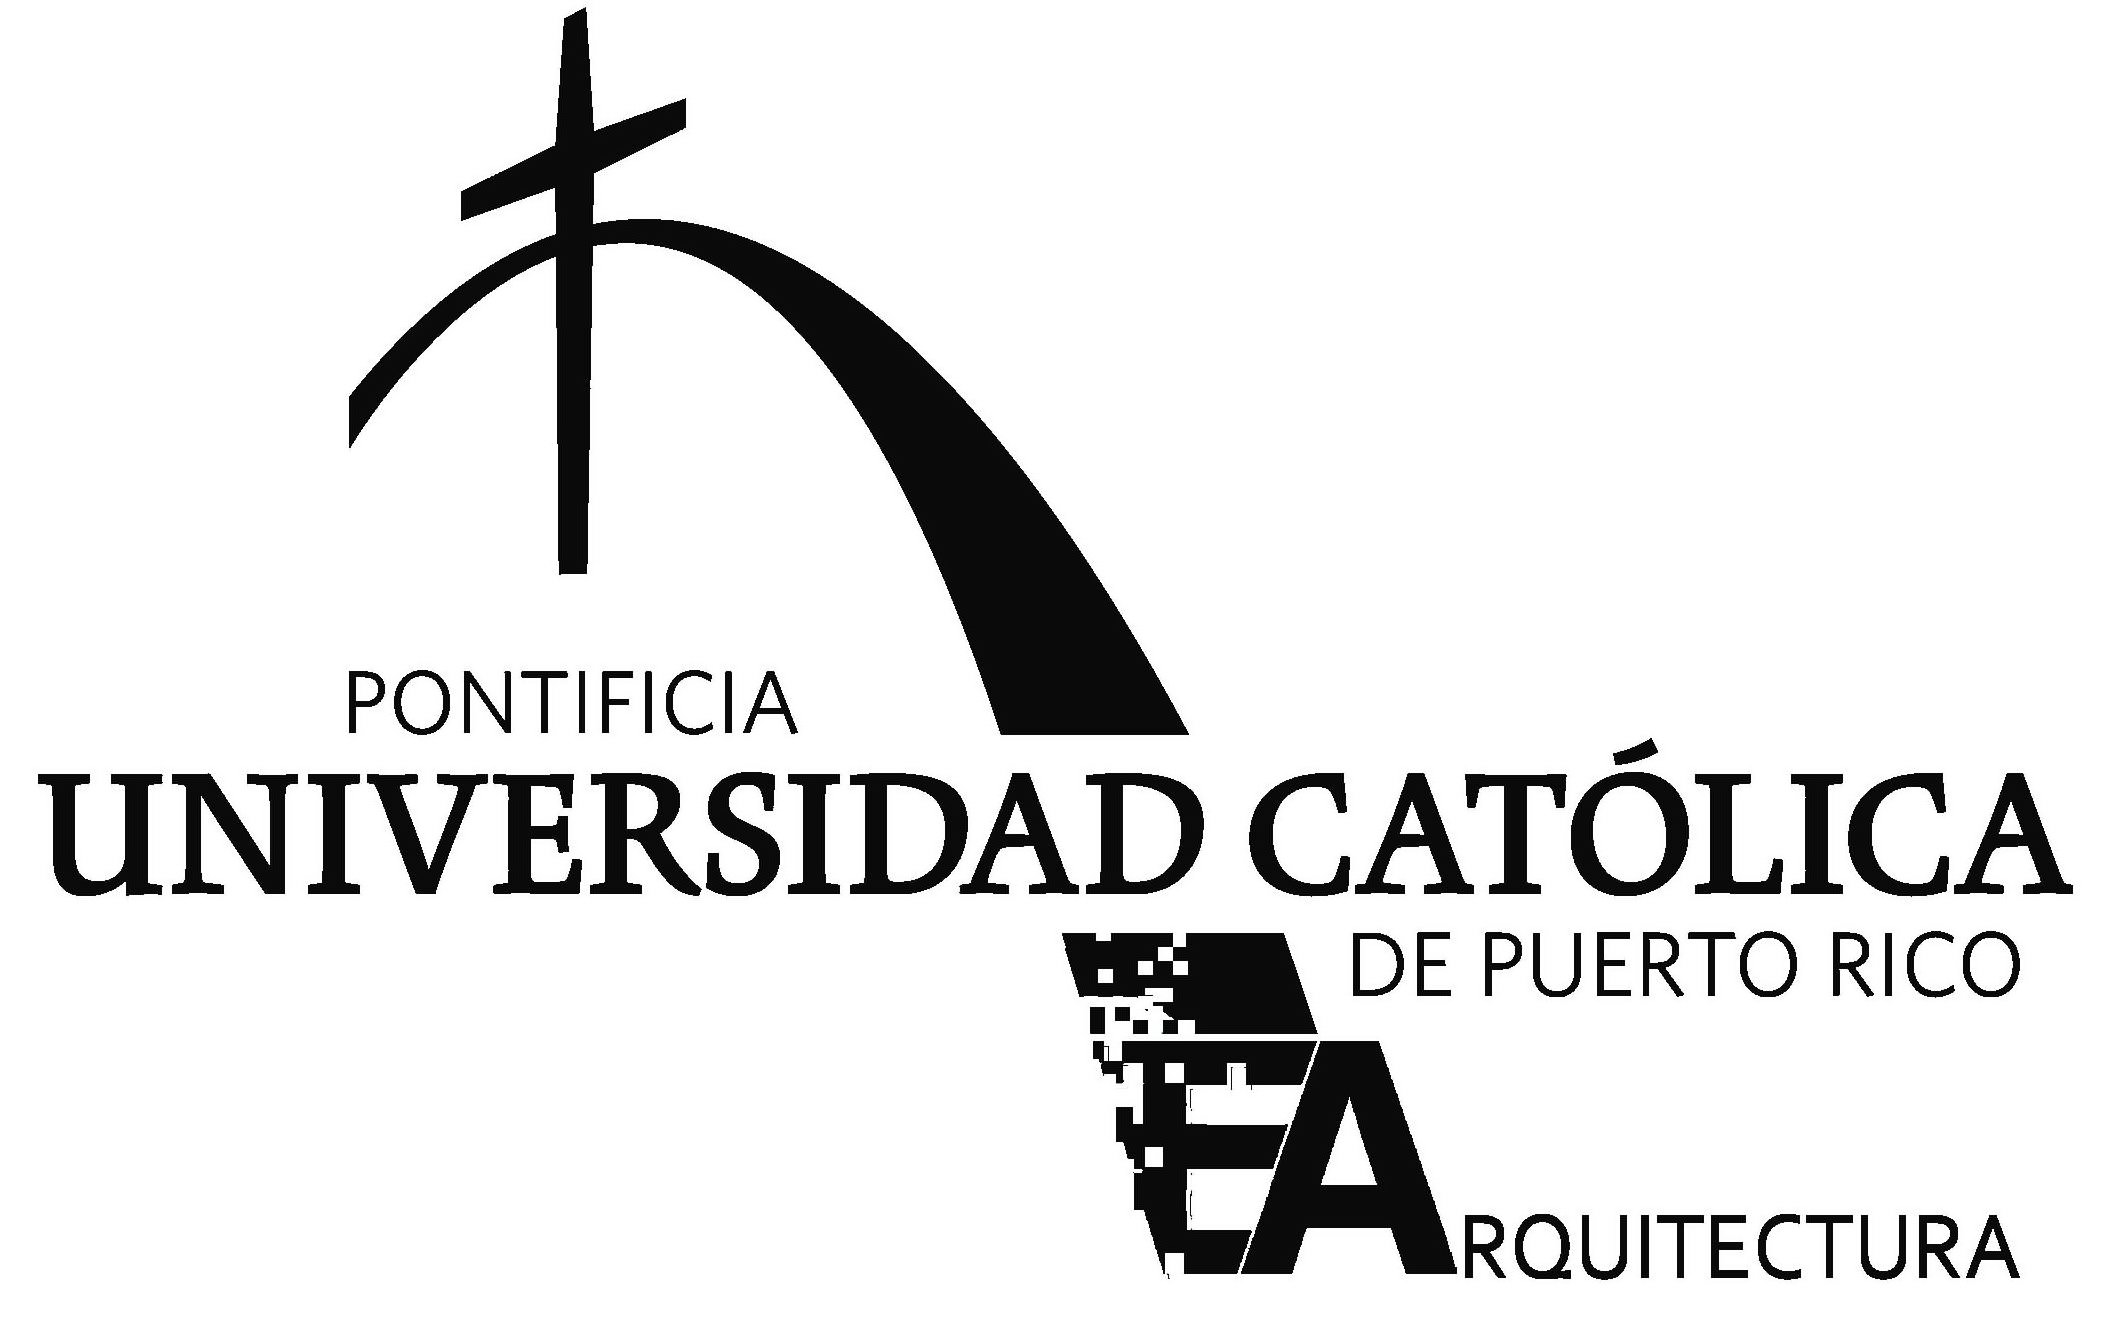  PONTIFICIA UNIVERSIDAD CATÃLICA DE PUERTO RICO E ARQUITECTURA